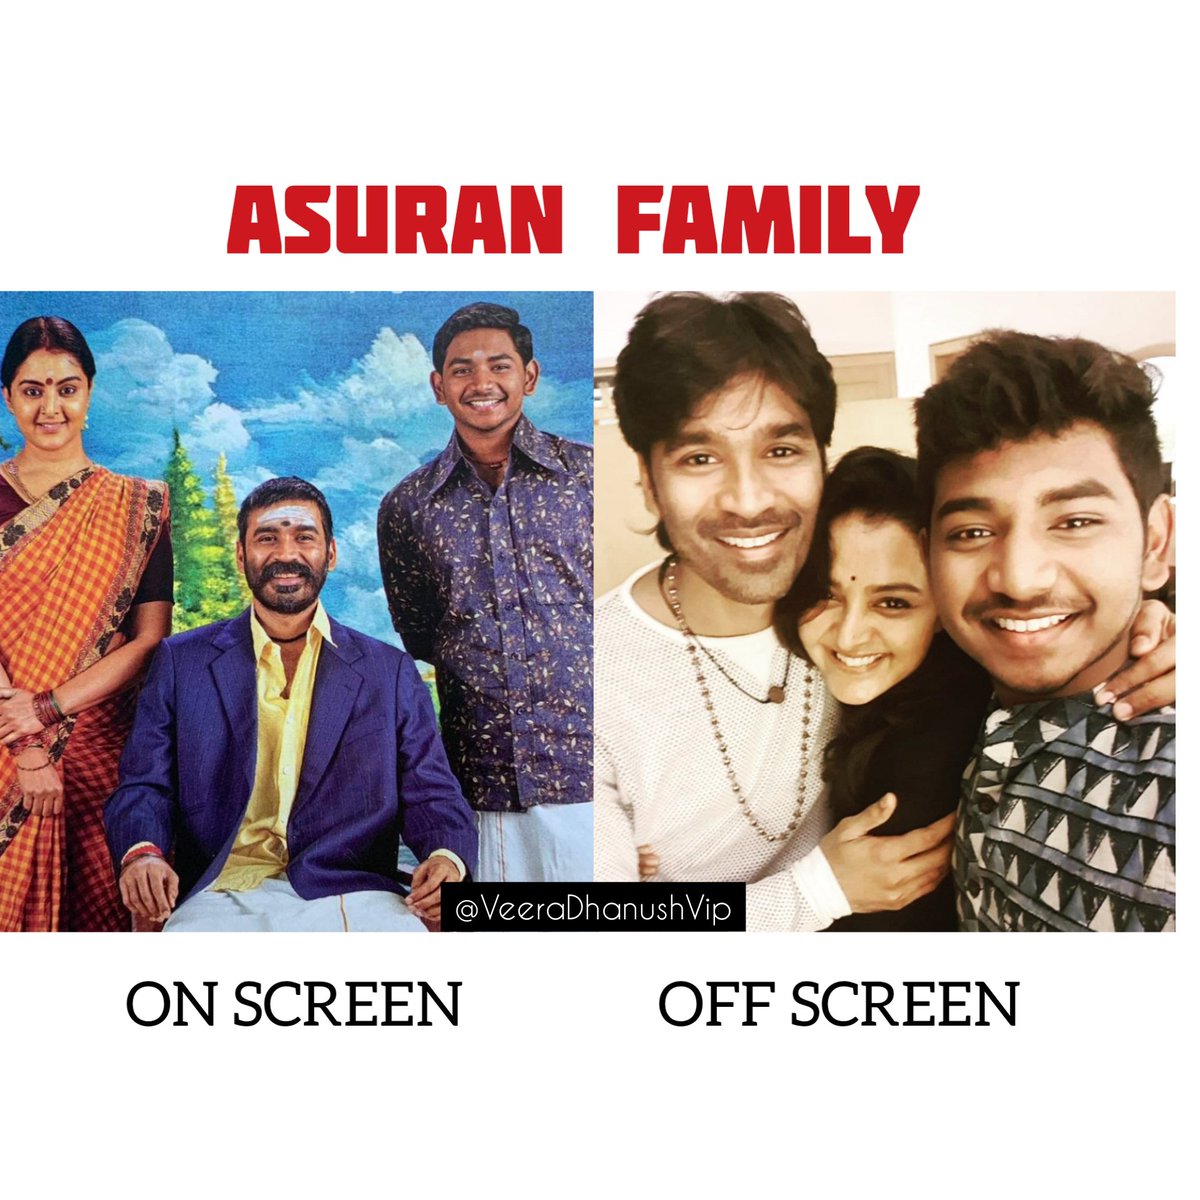 #Asuran Family 😍🥰
.
#Dhanush #ManjuWarrier #KenKarunas